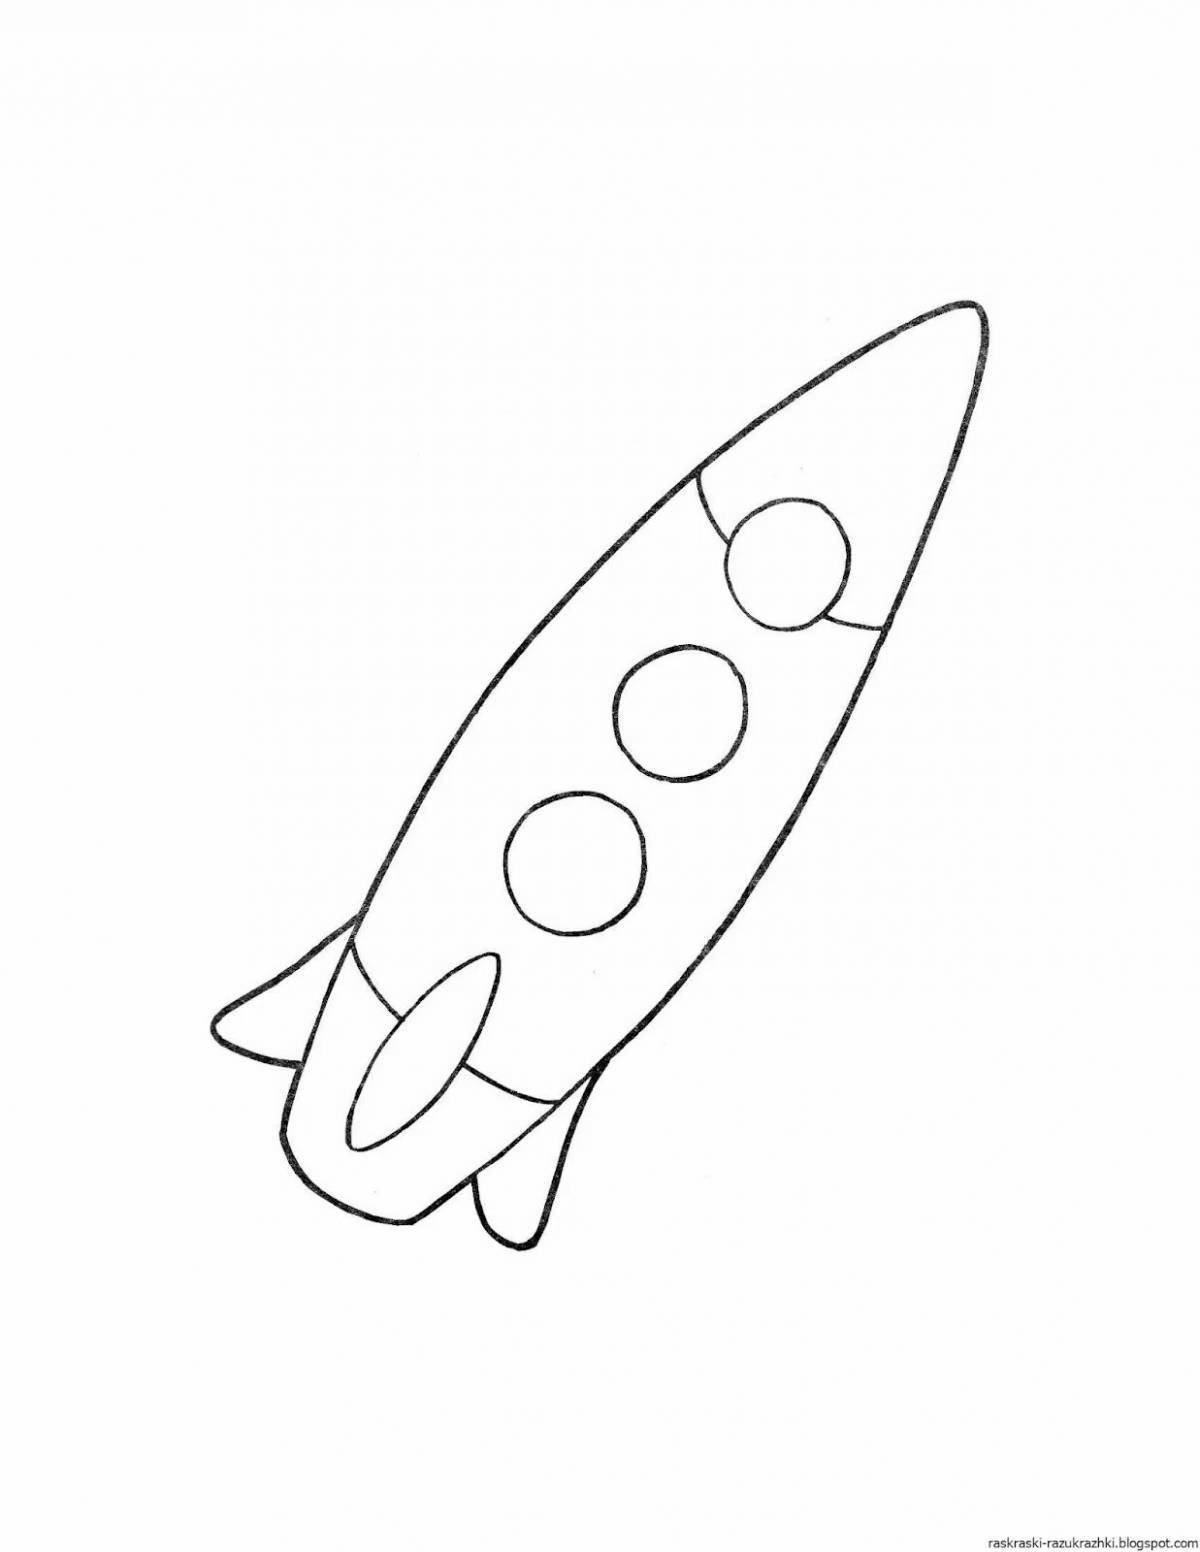 Замечательная ракета-раскраска для детей